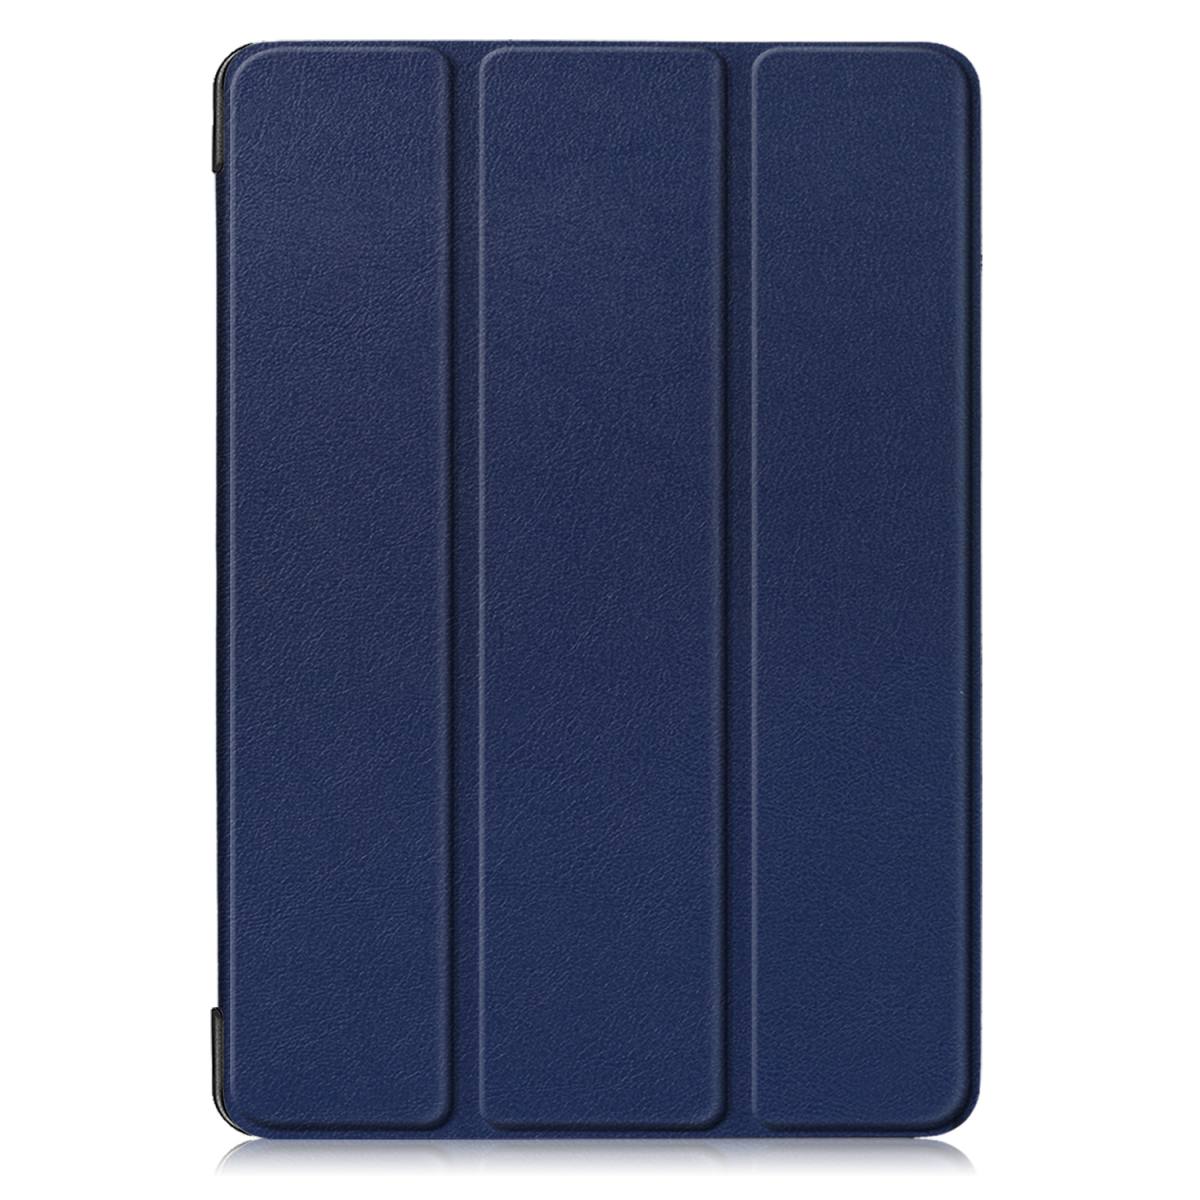 Чехол IT Baggage для iPad 2019 10.2 Blue